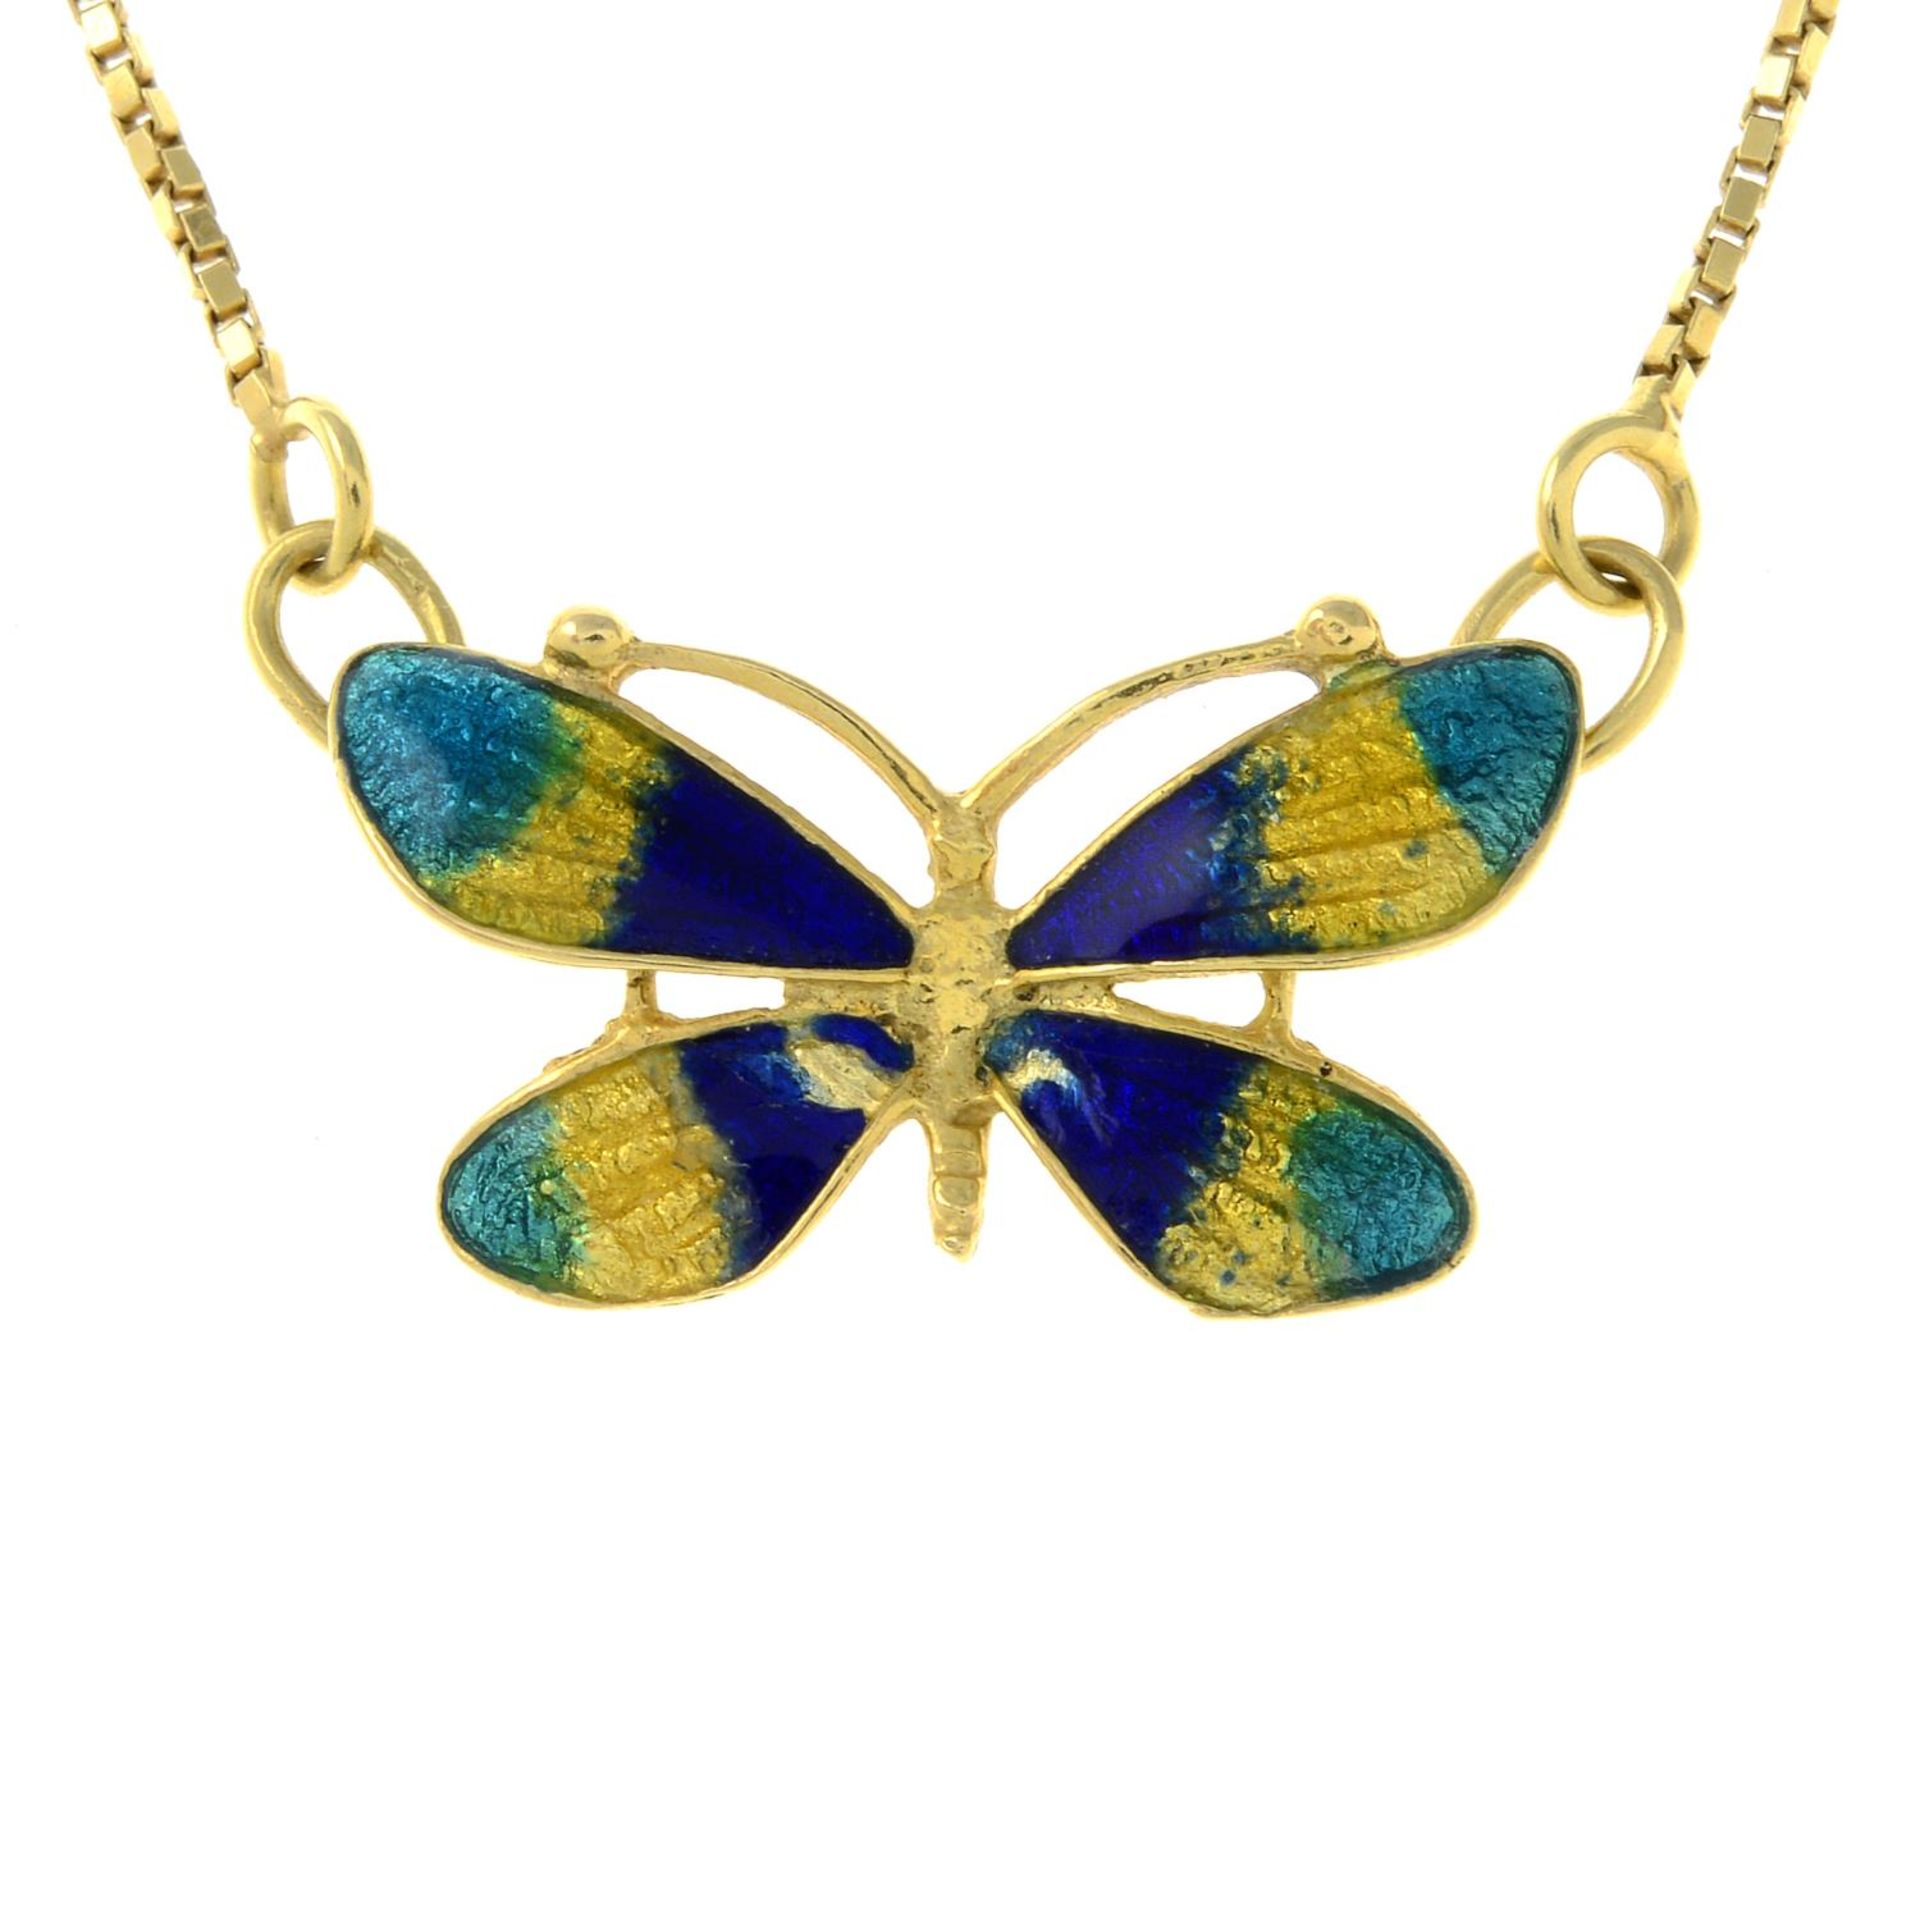 An enamel butterfly pendant,